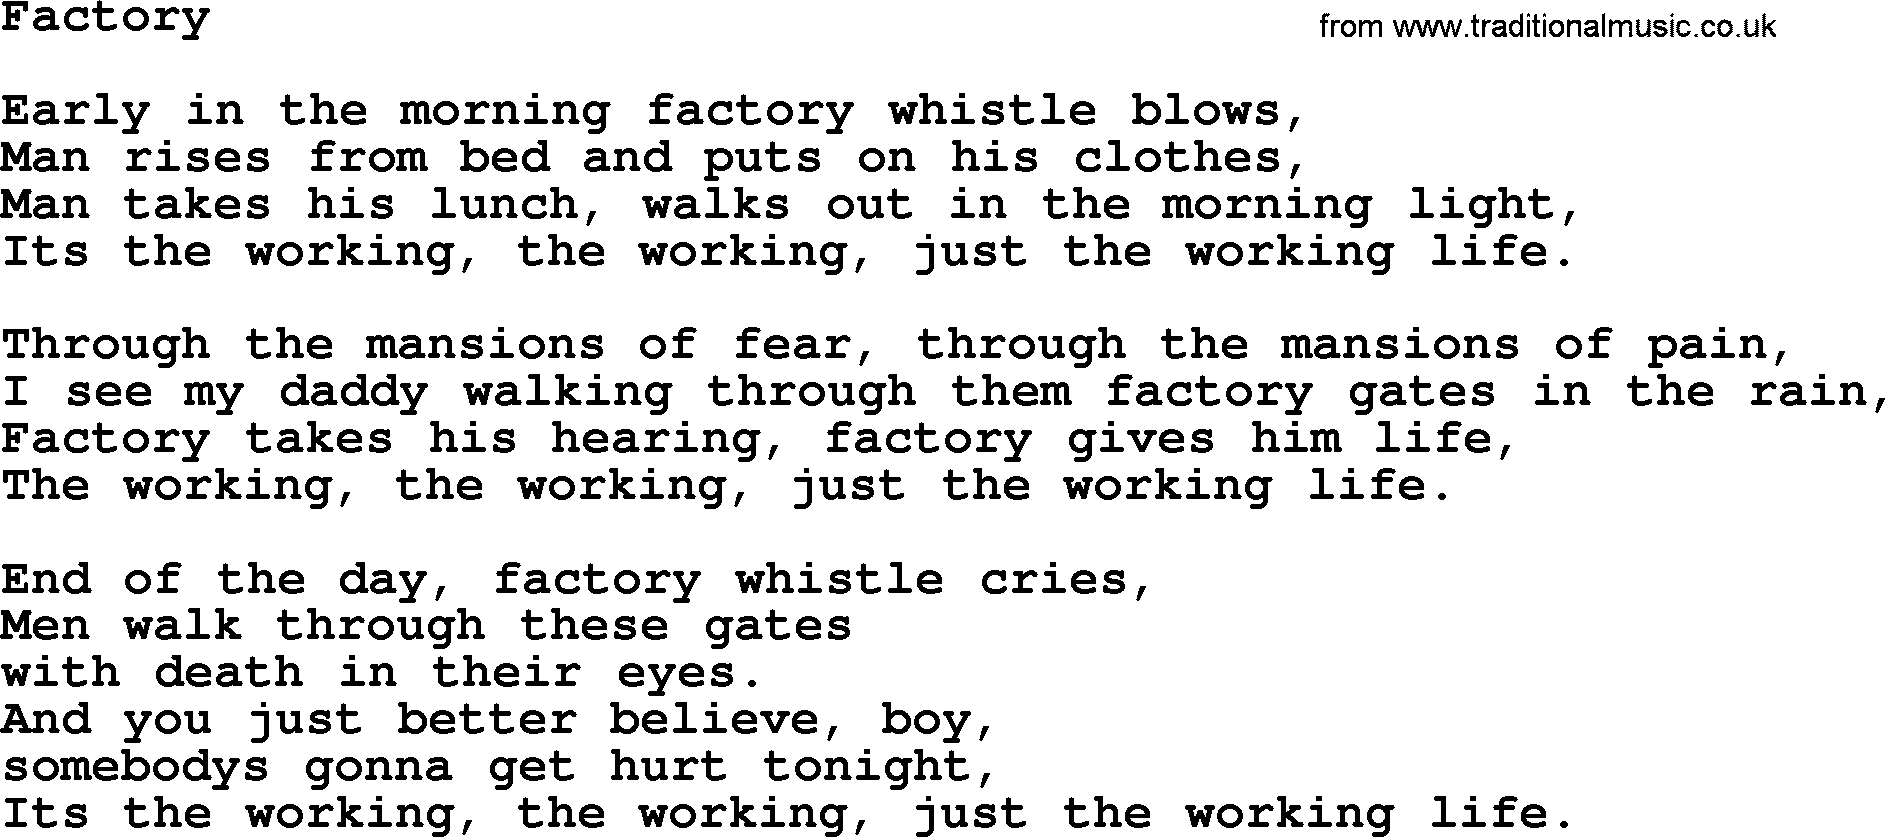 Bruce Springsteen song: Factory lyrics